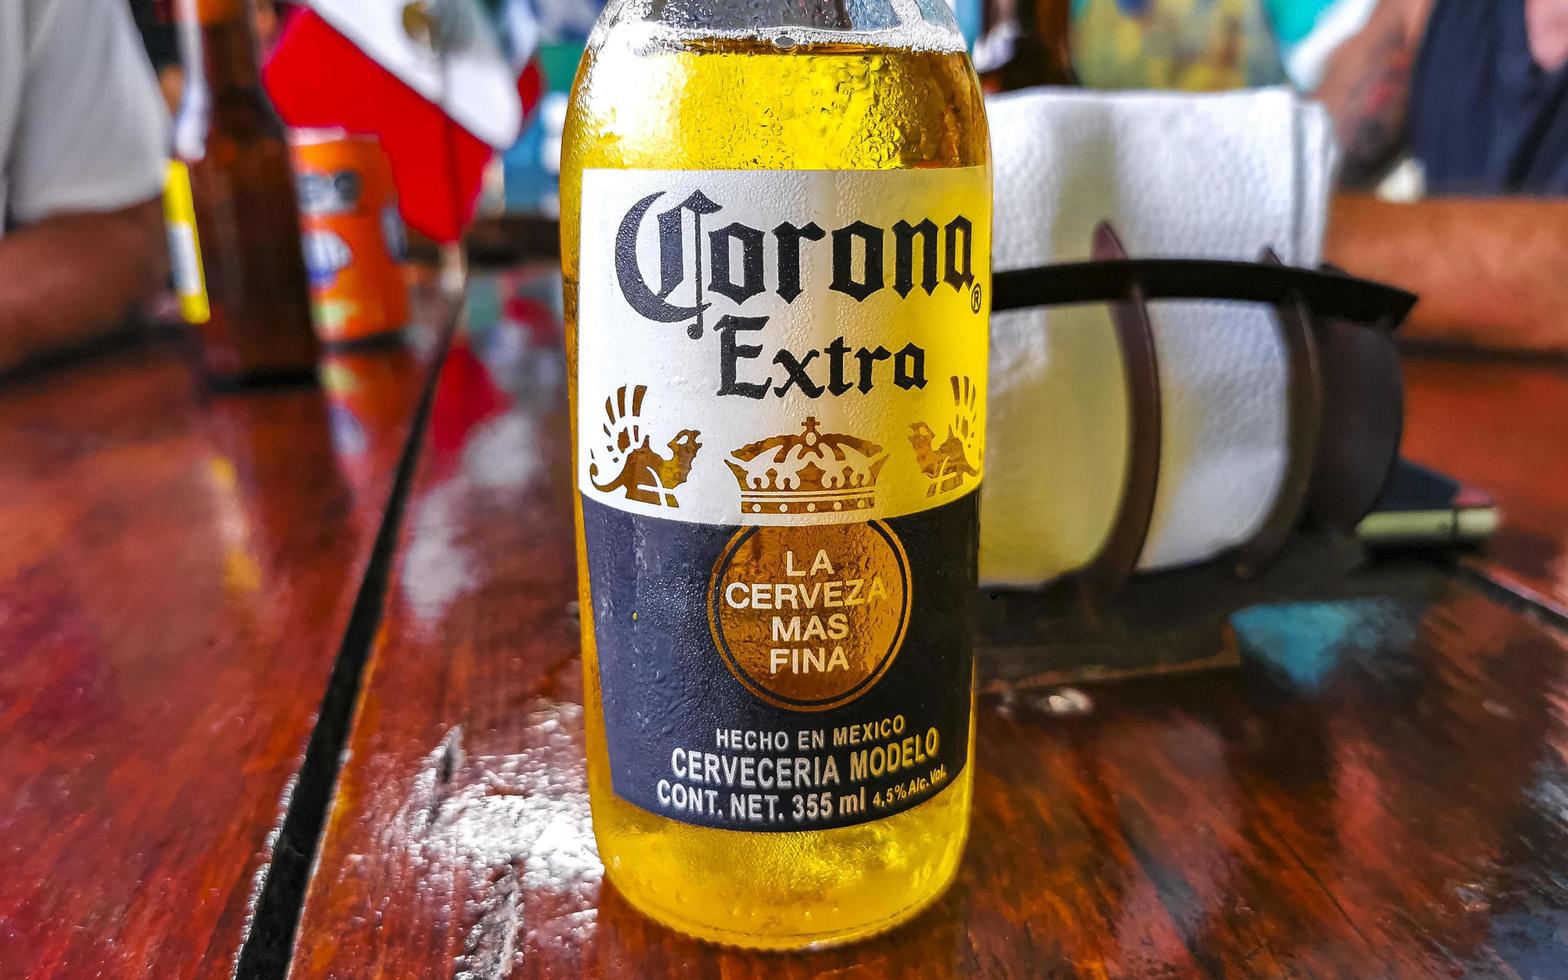 playa del carmen quintana roo México 2022 corona Cerveja garrafa dentro restaurante Barra dentro playa del carmen México. foto